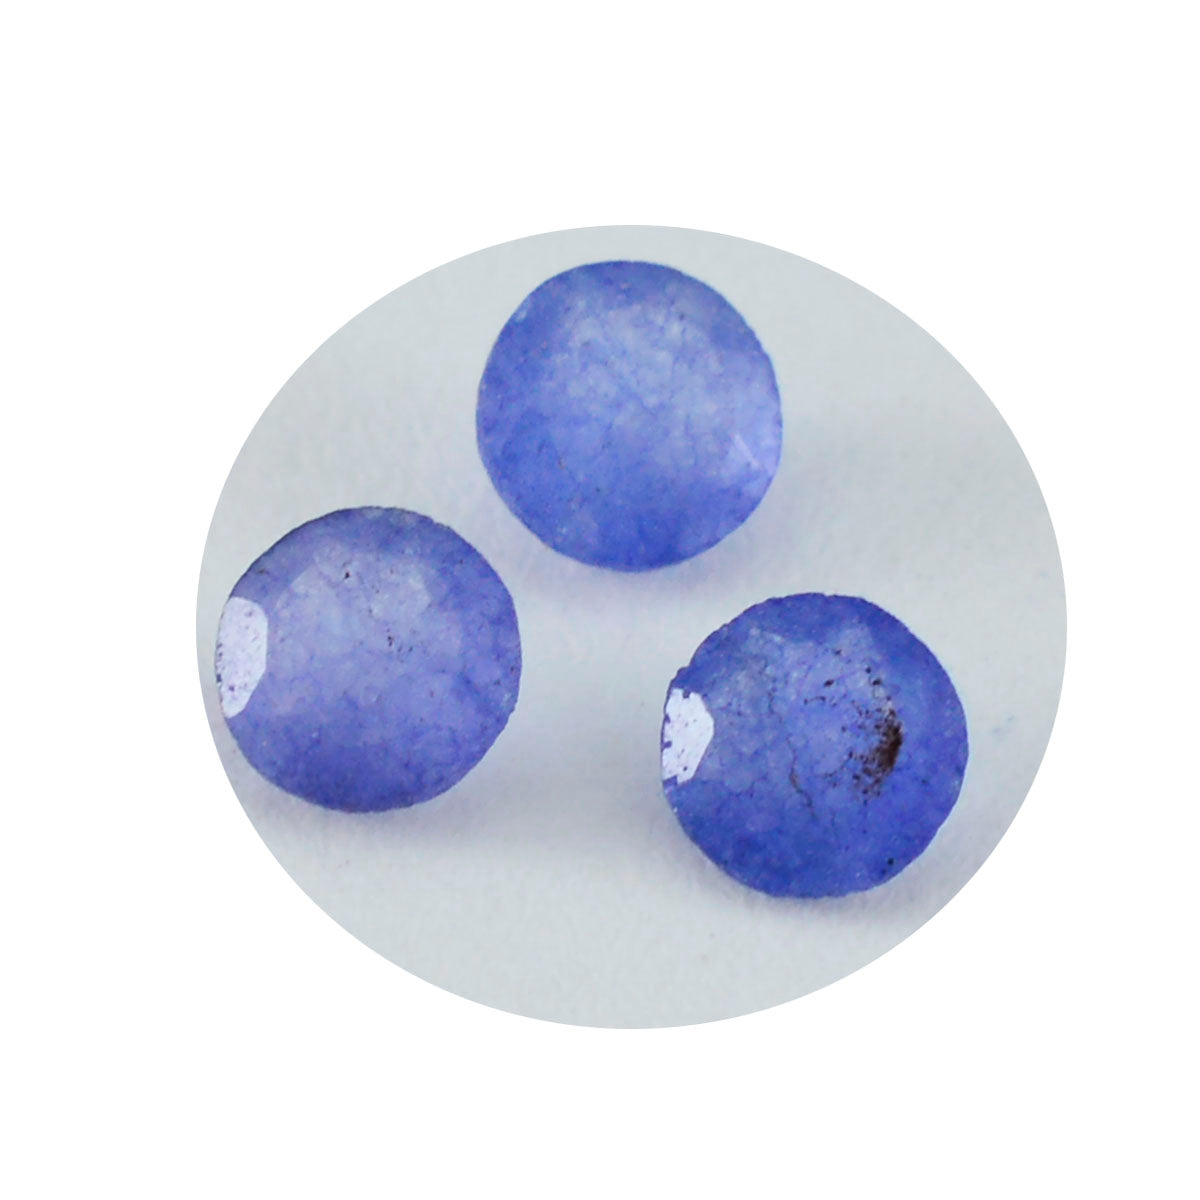 Riyogems 1 Stück natürlicher blauer Jaspis, facettiert, 8 x 8 mm, runde Form, A-Qualität, lose Edelsteine